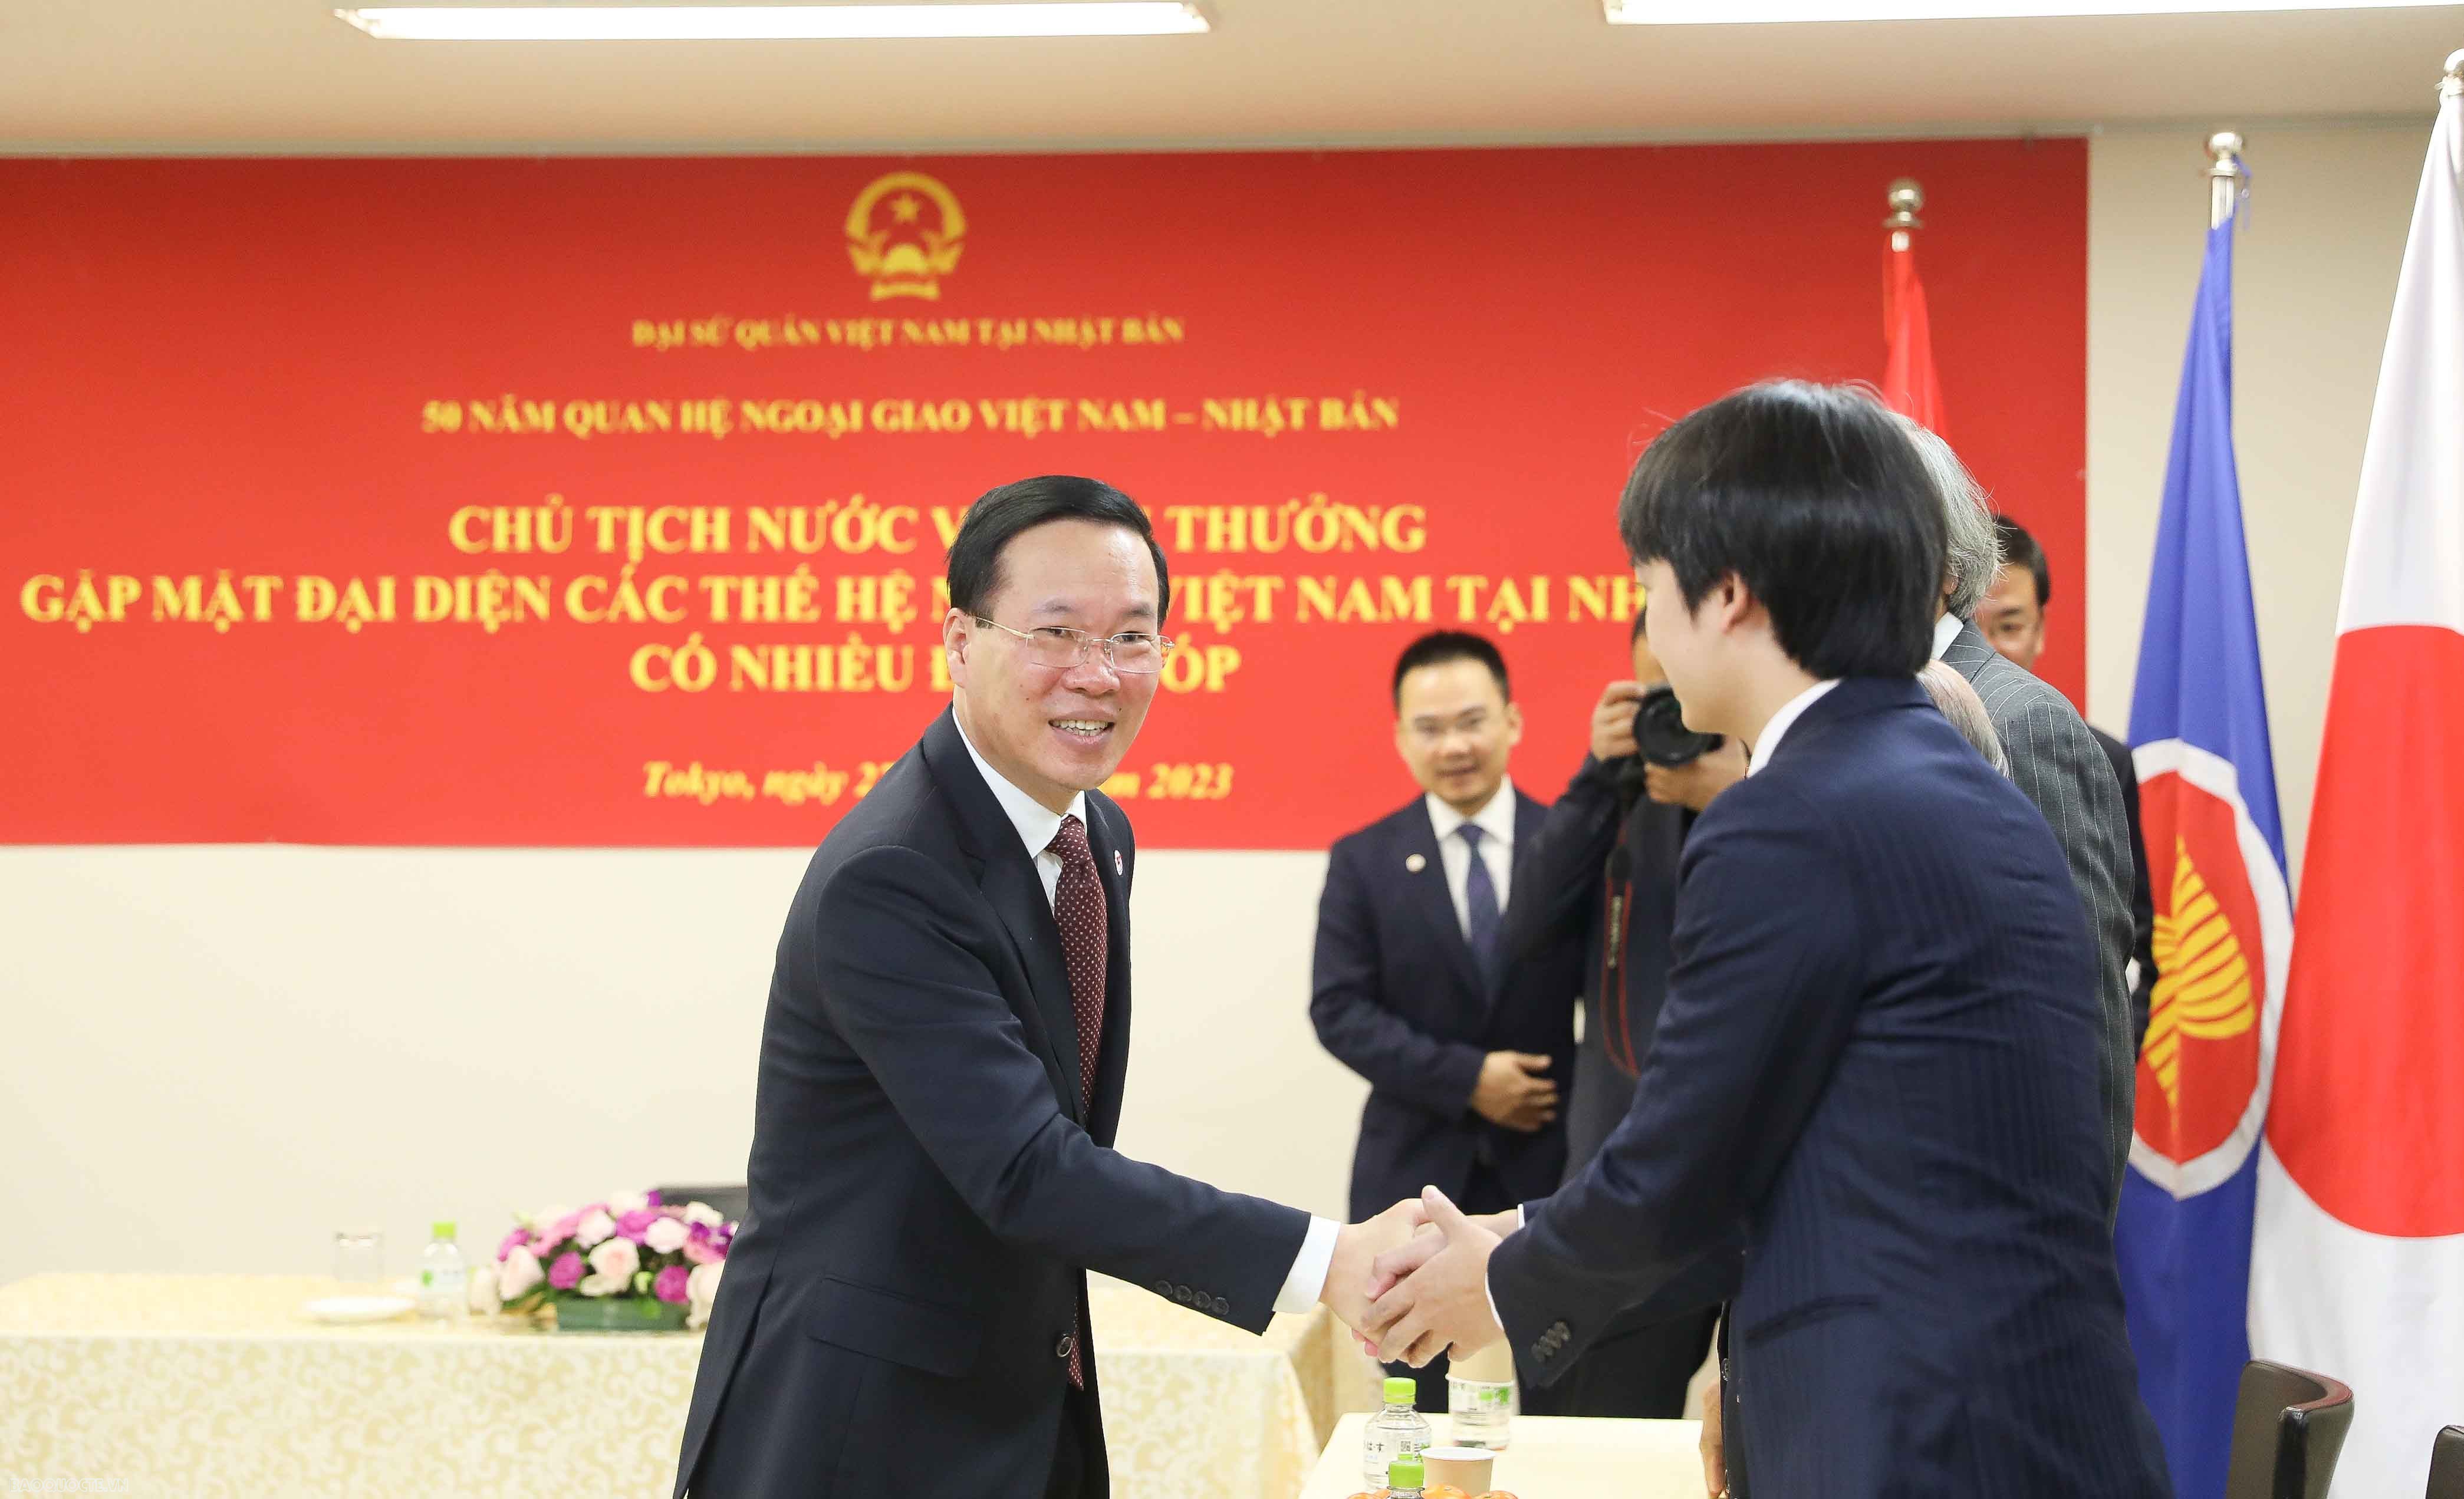 Chủ tịch nước: Khẳng định năng lực, trình độ, phẩm chất người Việt tại Nhật là nền tảng vững chắc cho quan hệ song phương